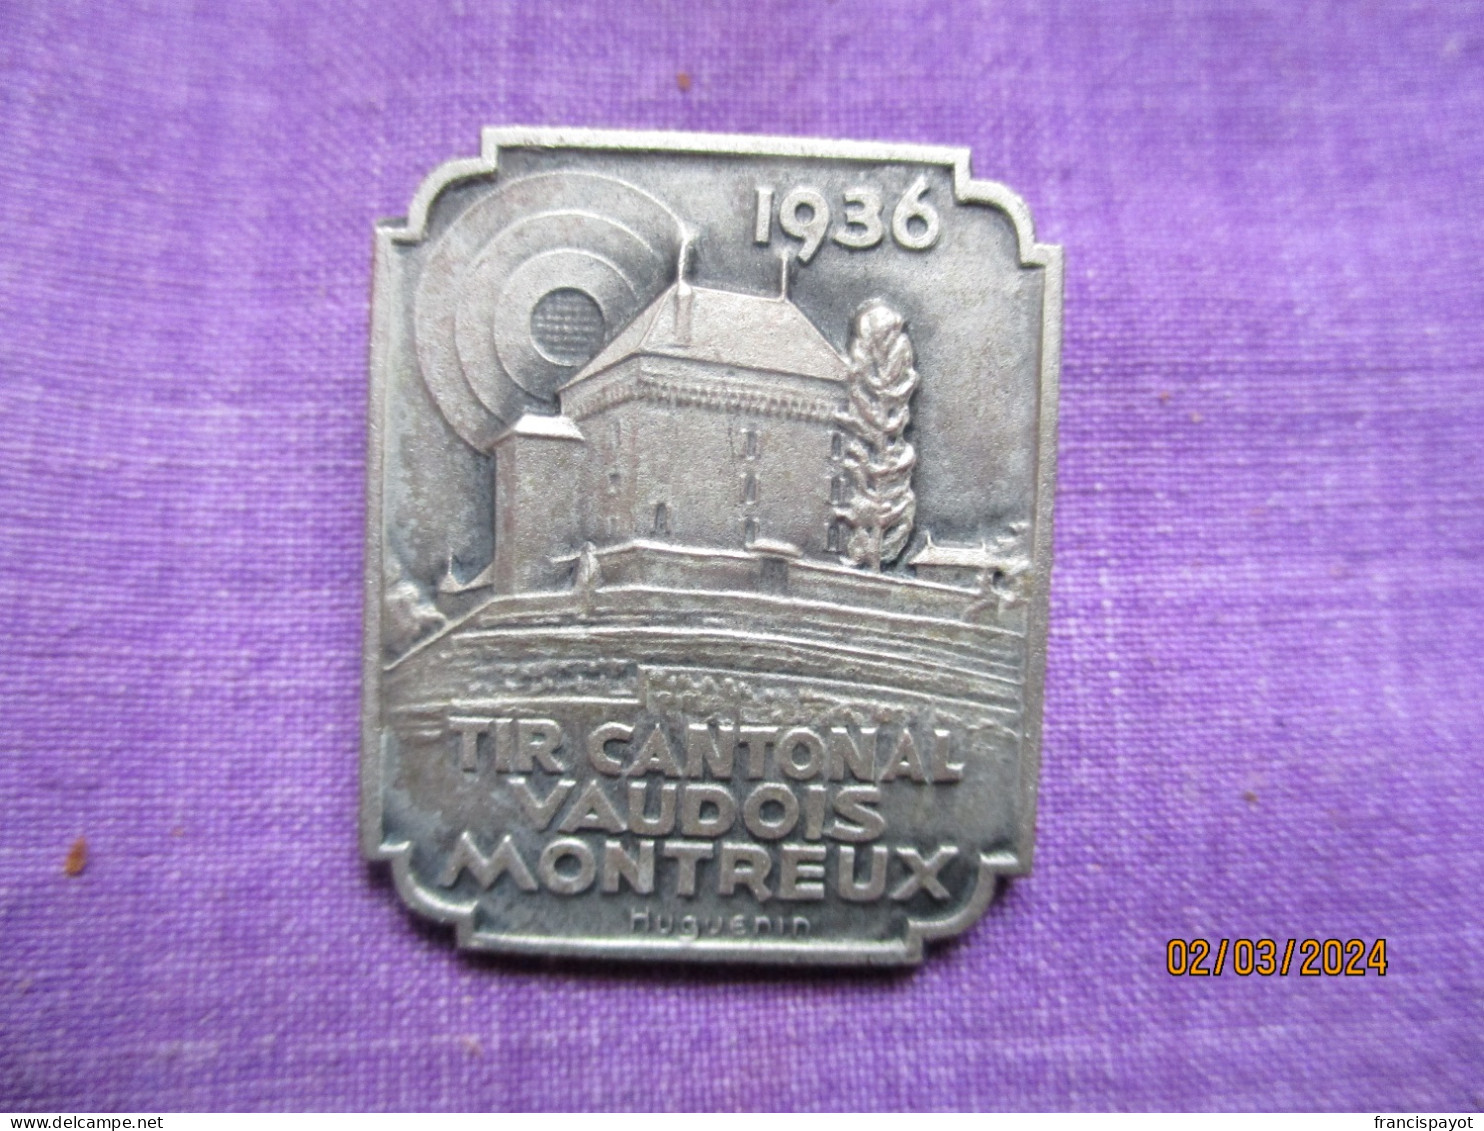 Suisse: épinglette Tir Cantonal Vaudois Montreux 1931 - Professionnels / De Société